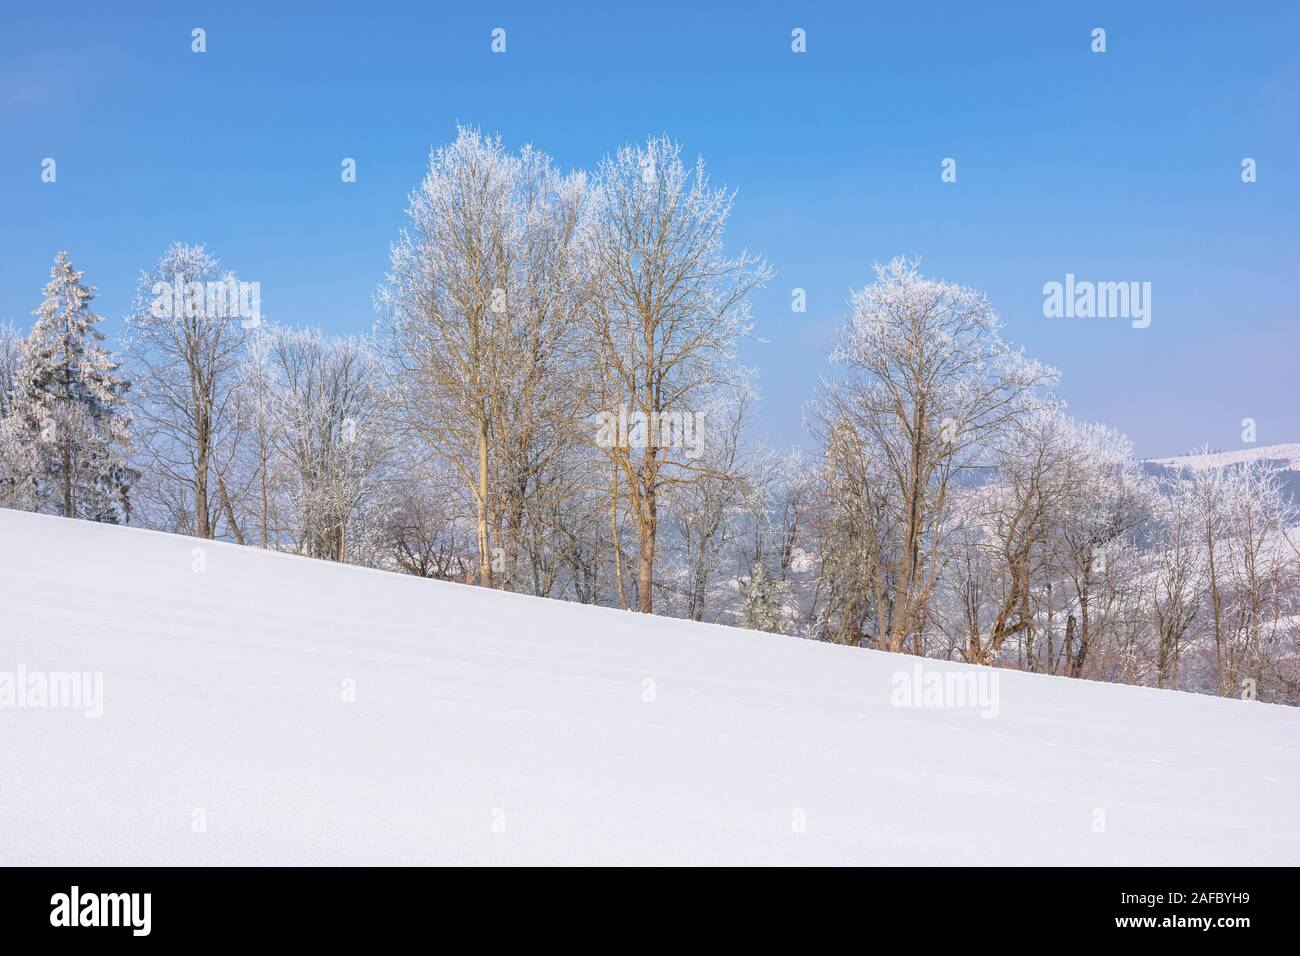 Bäume im Raureif auf schneebedeckten Wiese. sonnigen Vormittag des bergigen Landschaft. dunstige Atmosphäre mit blauer Himmel. Ruhige winter natur landschaft. beaut Stockfoto